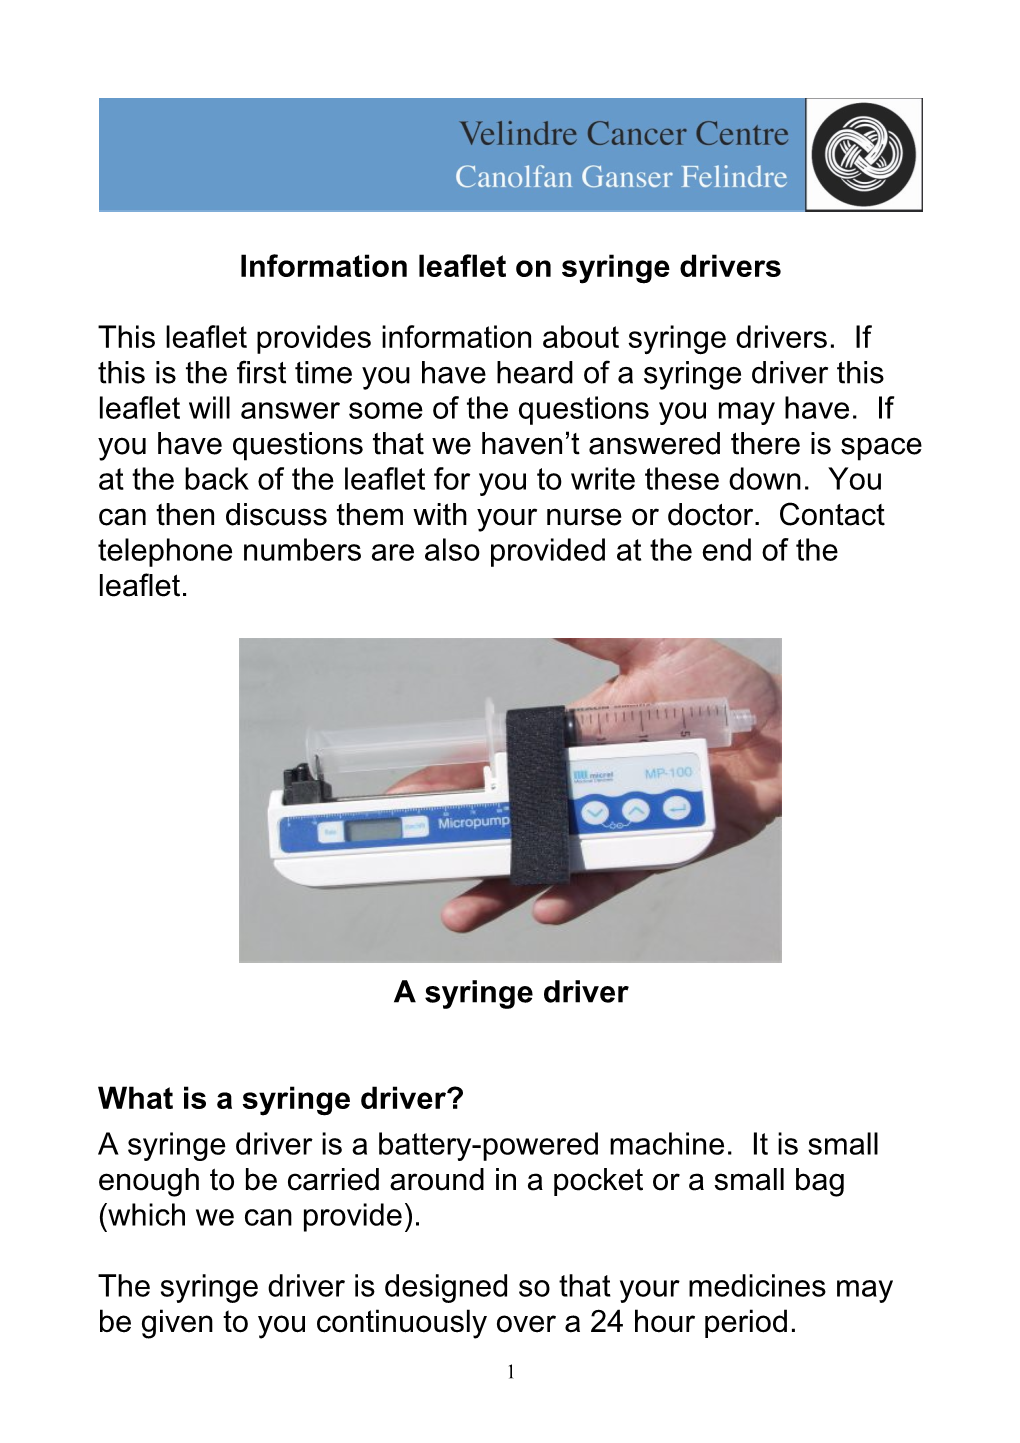 Information Ieaflet on Syringe Drivers